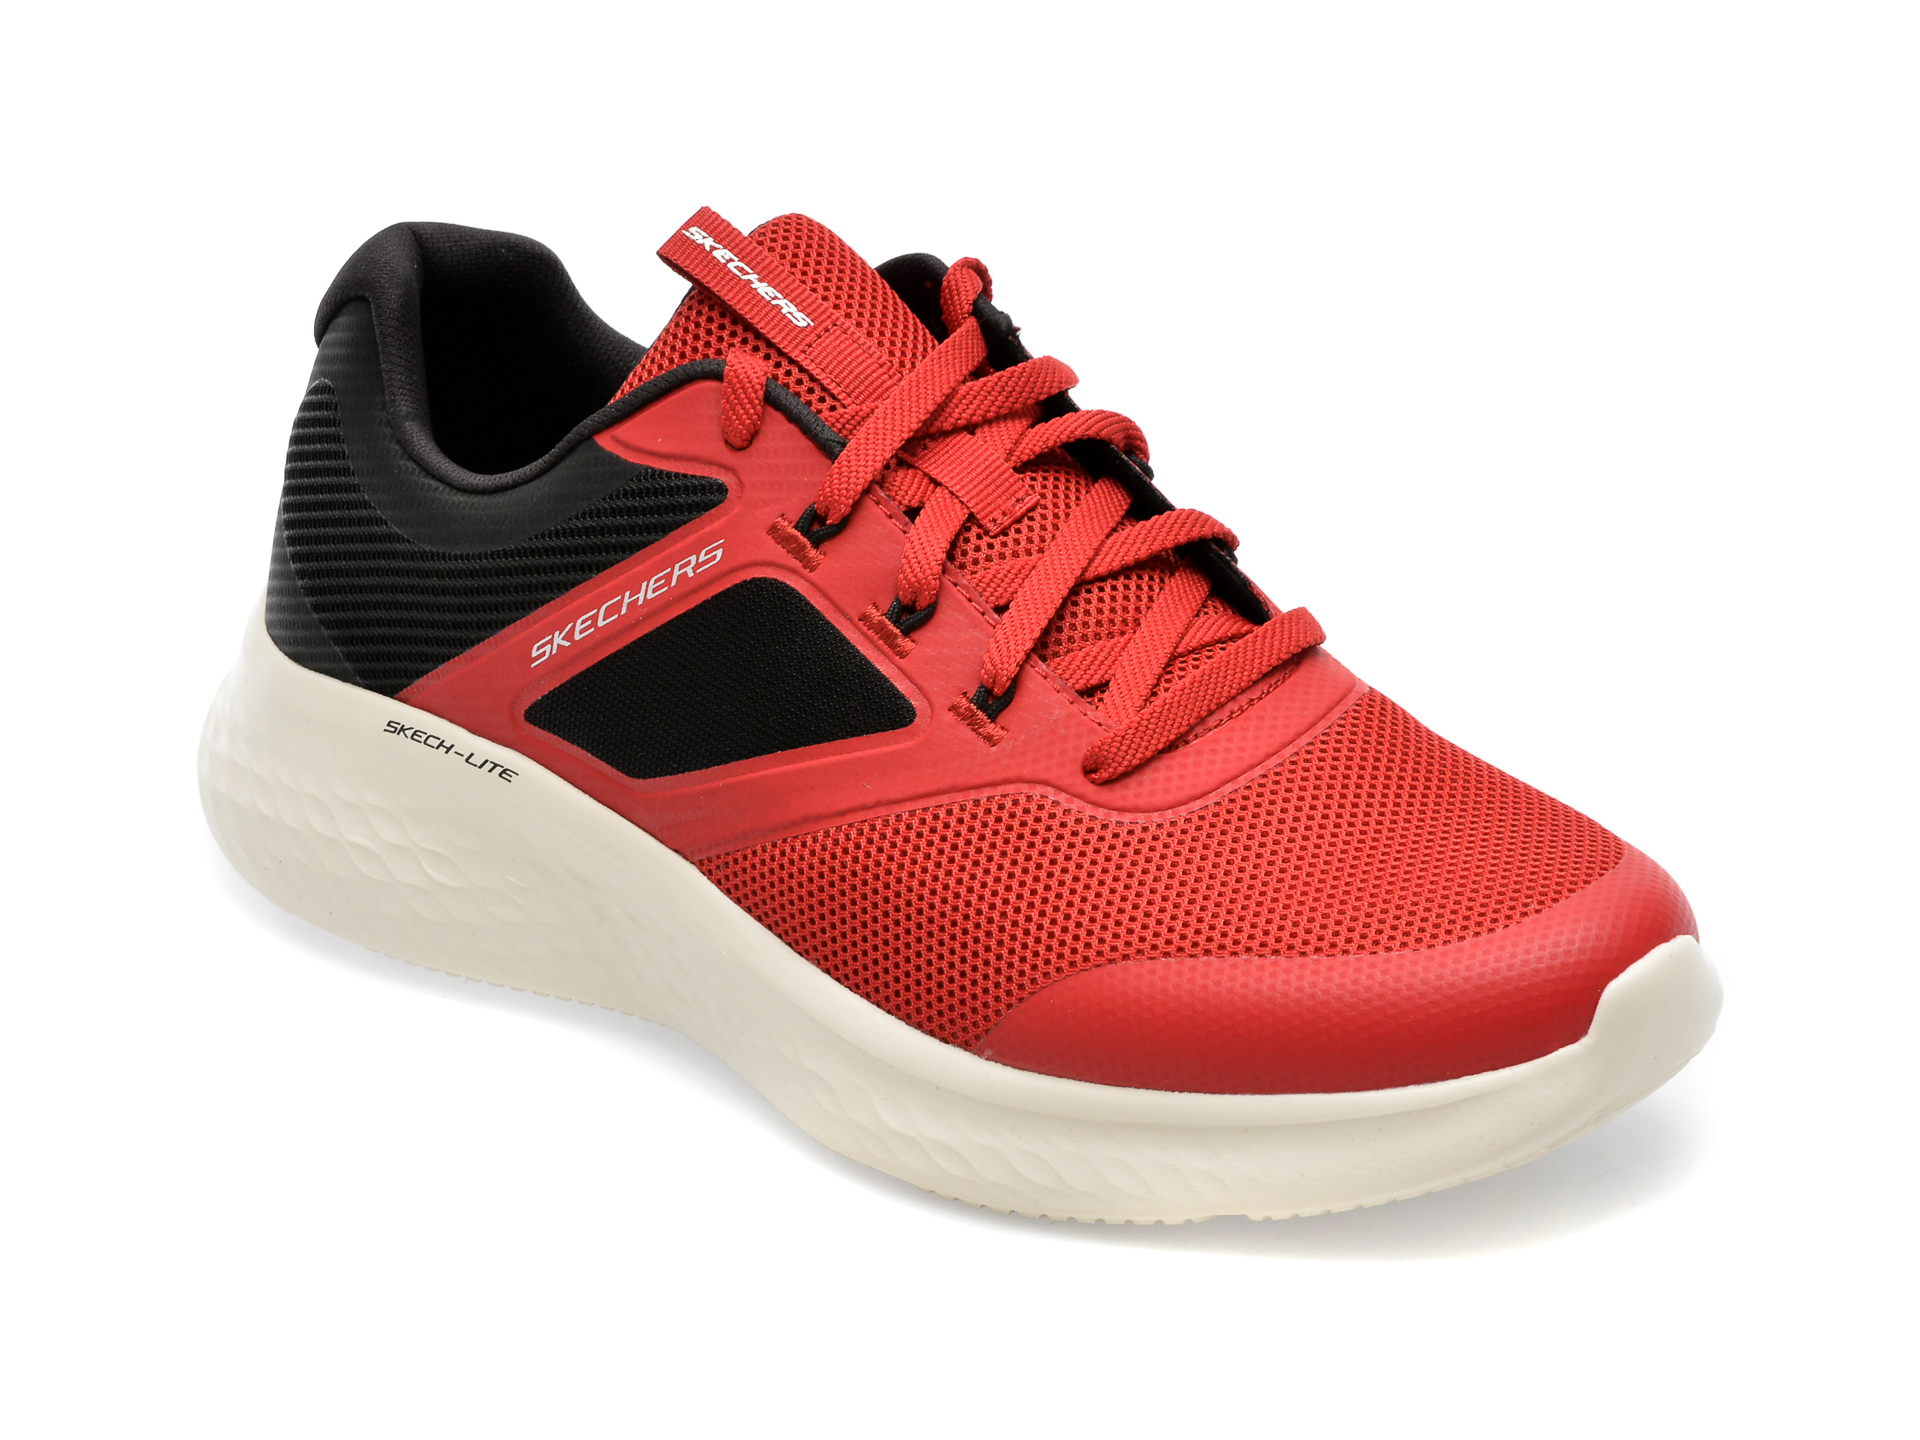 Pantofi SKECHERS rosii, SKECH-LITE PRO, din material textil /barbati/pantofi imagine noua